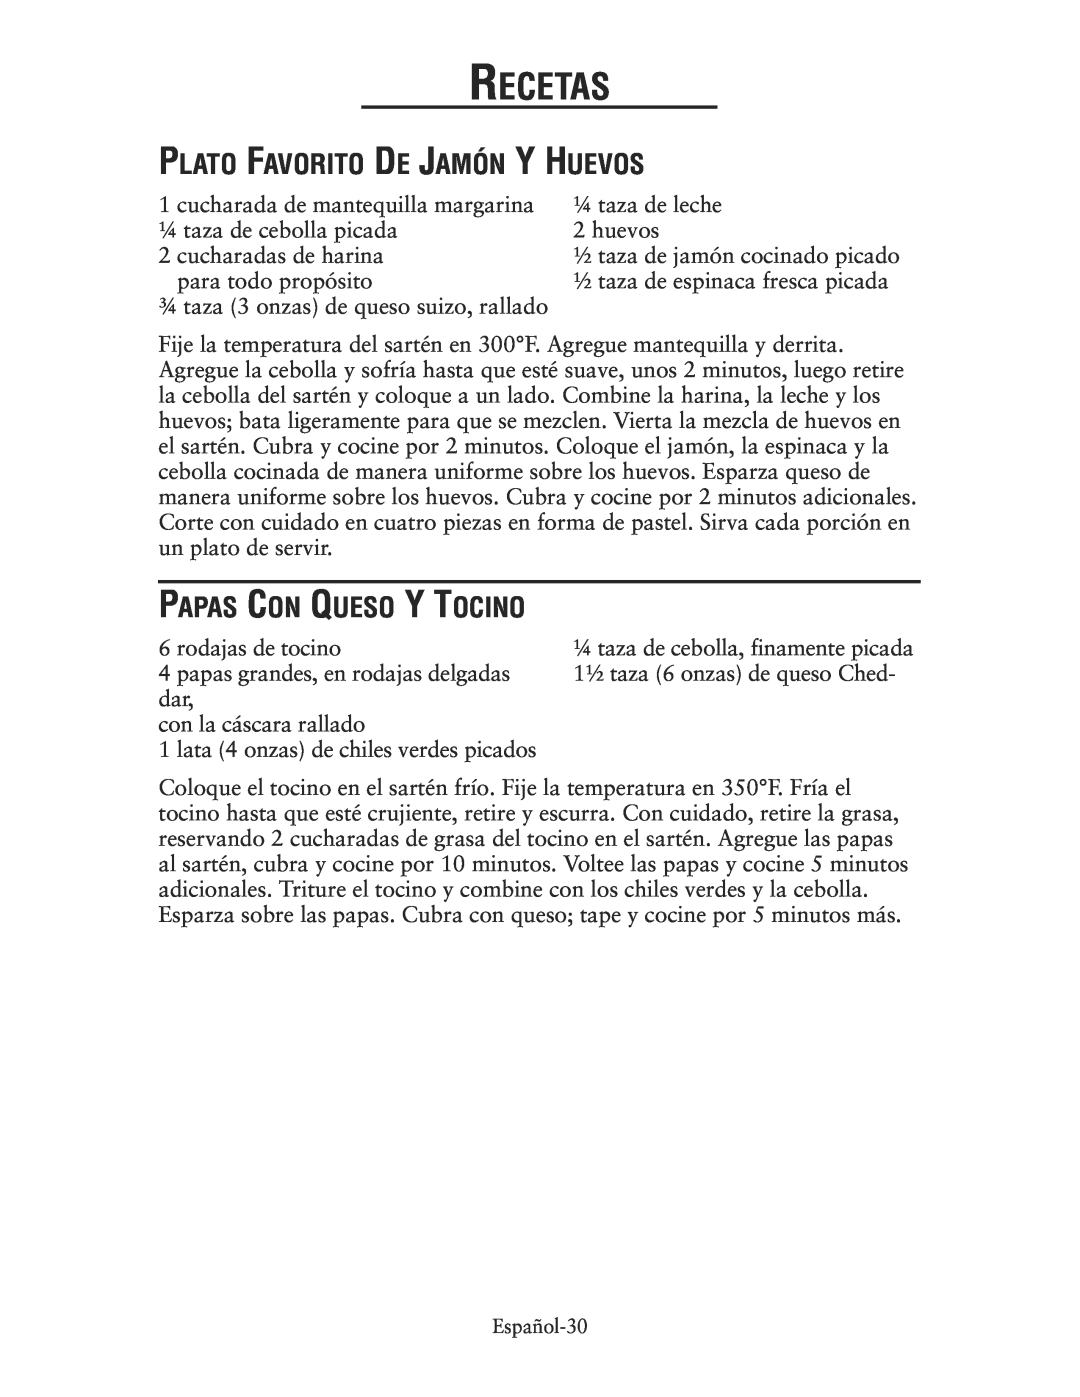 Oster CKSTSKRM20 user manual Plato Favorito De Jamón Y Huevos, Papas Con Queso Y Tocino, Recetas 